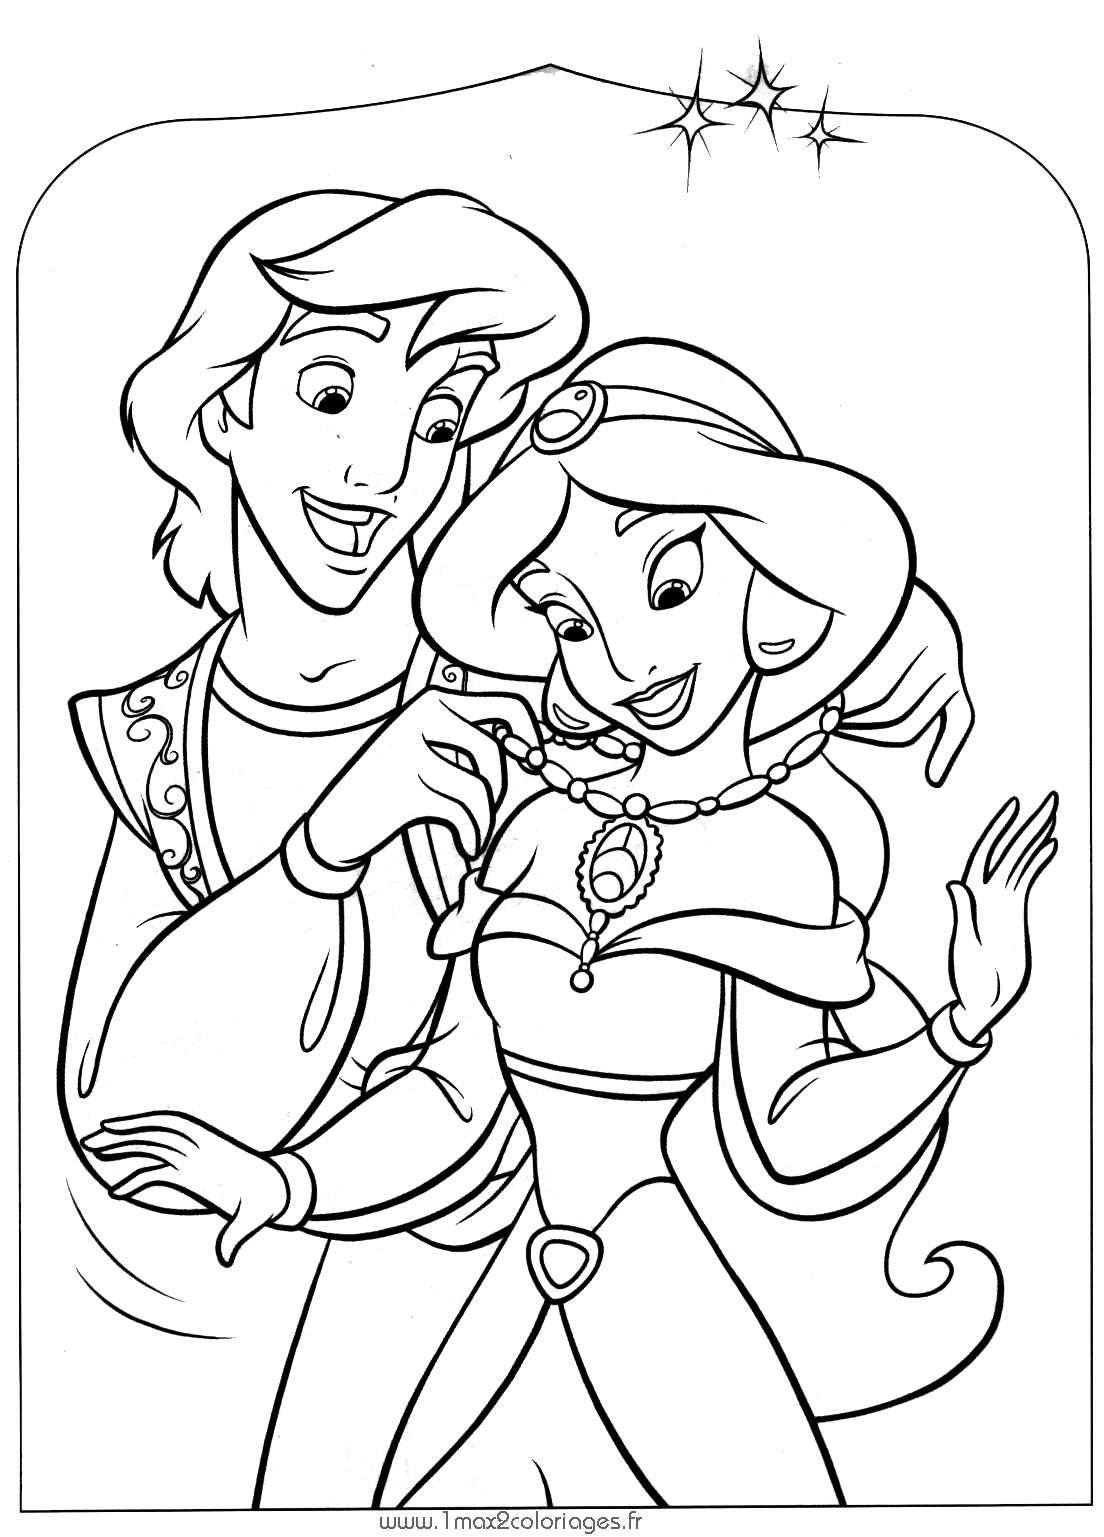 Coloração simples de Aladdin e Jasmim